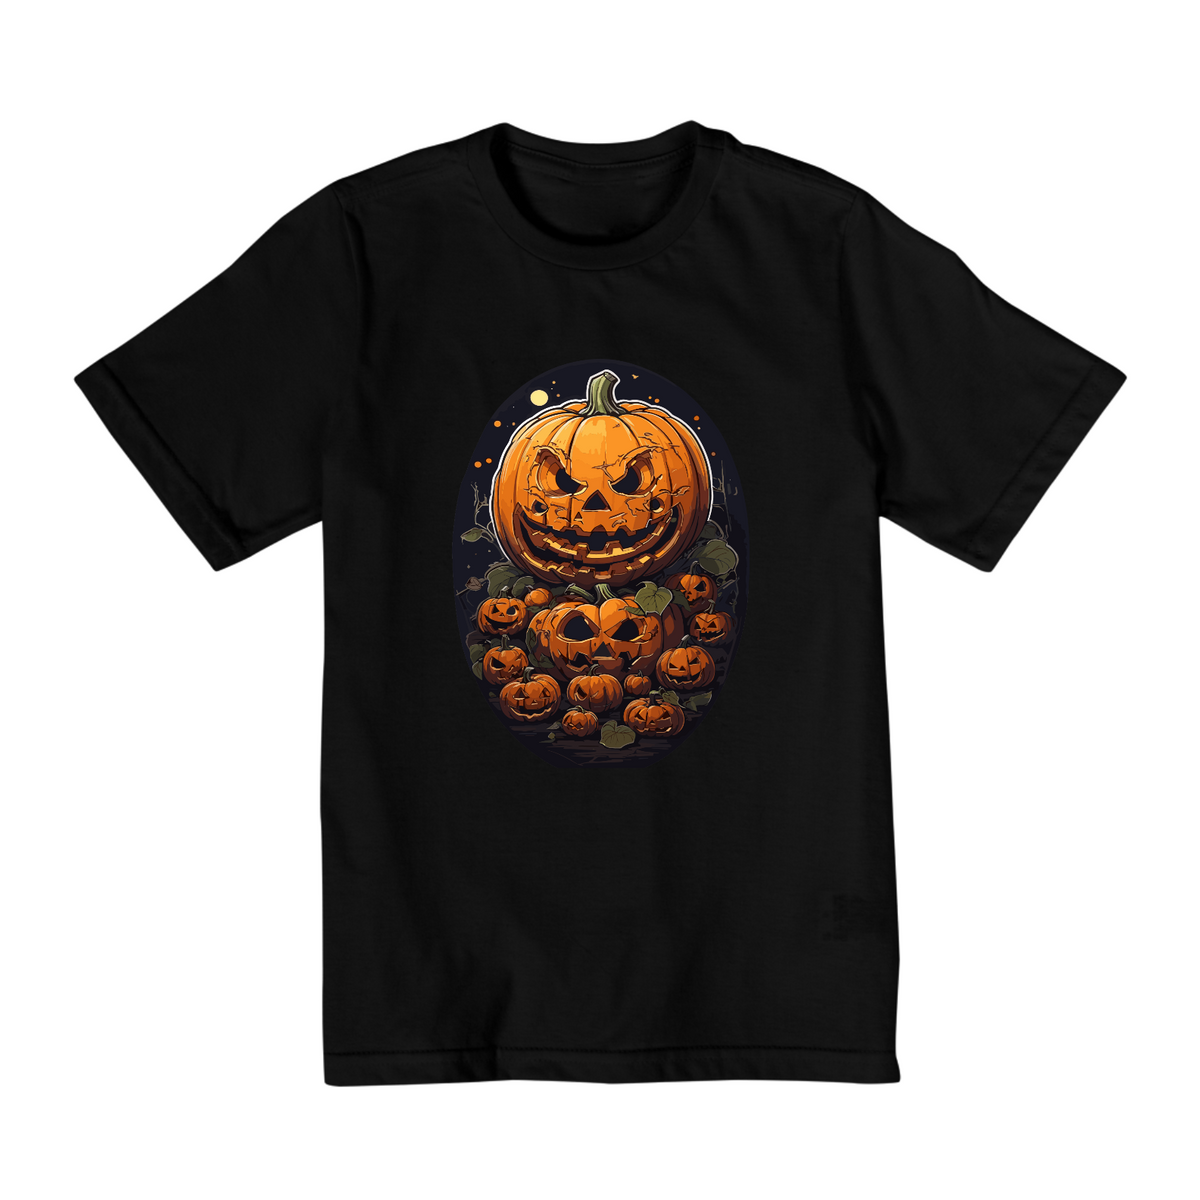 Nome do produto: Camiseta Infantil Quality - halloween 